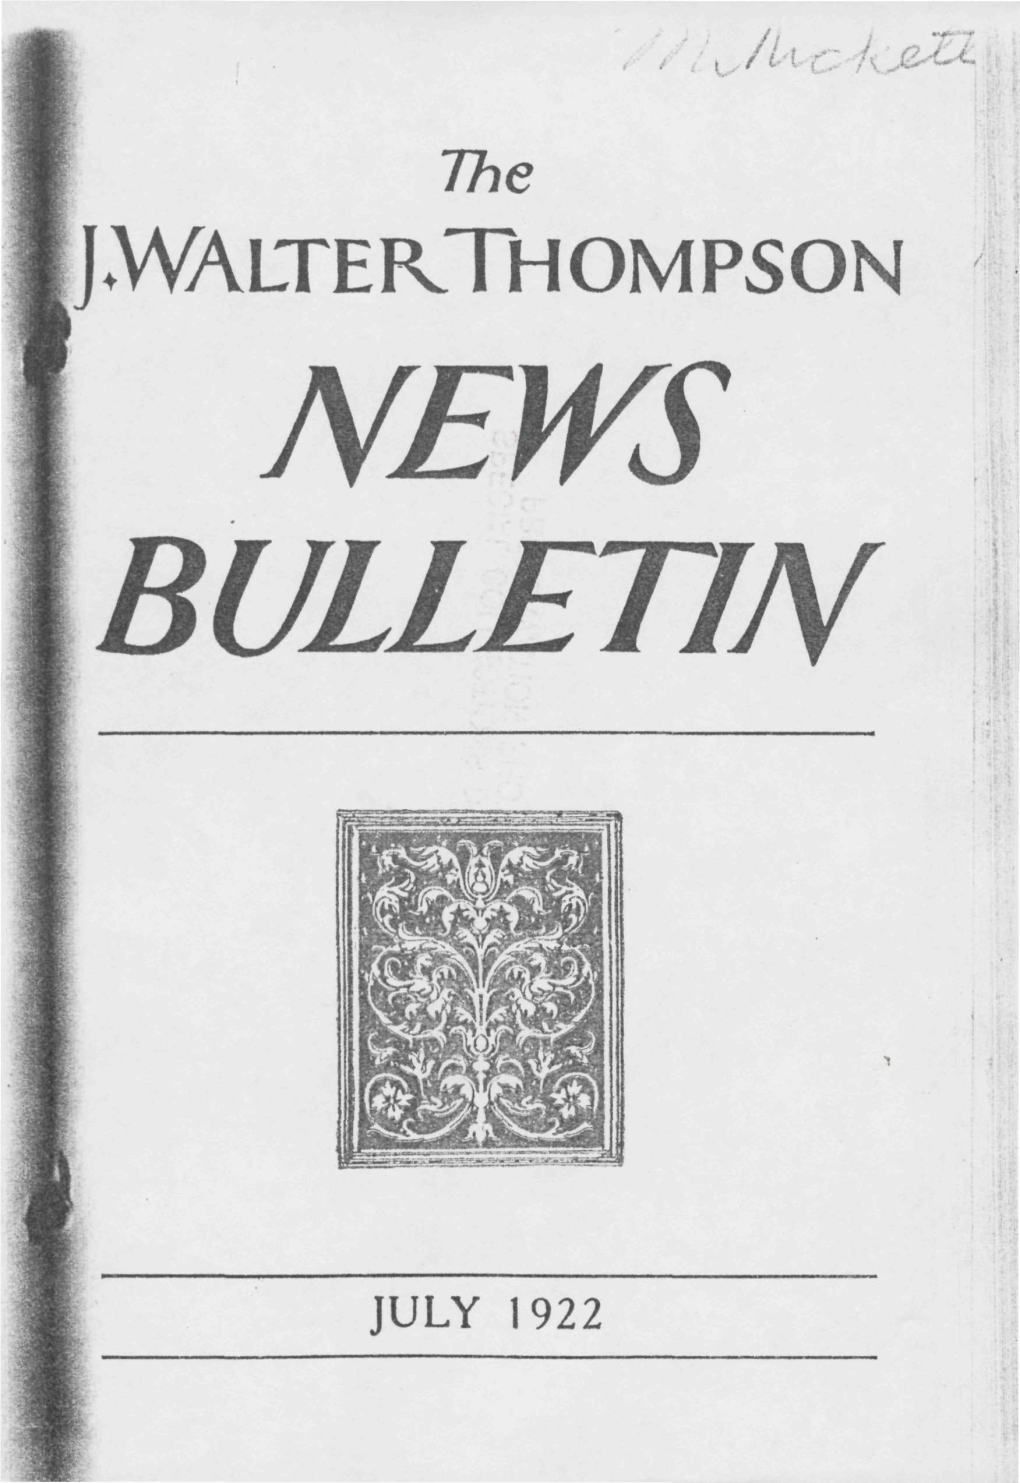 Jm^Lterthompson News Bulletin